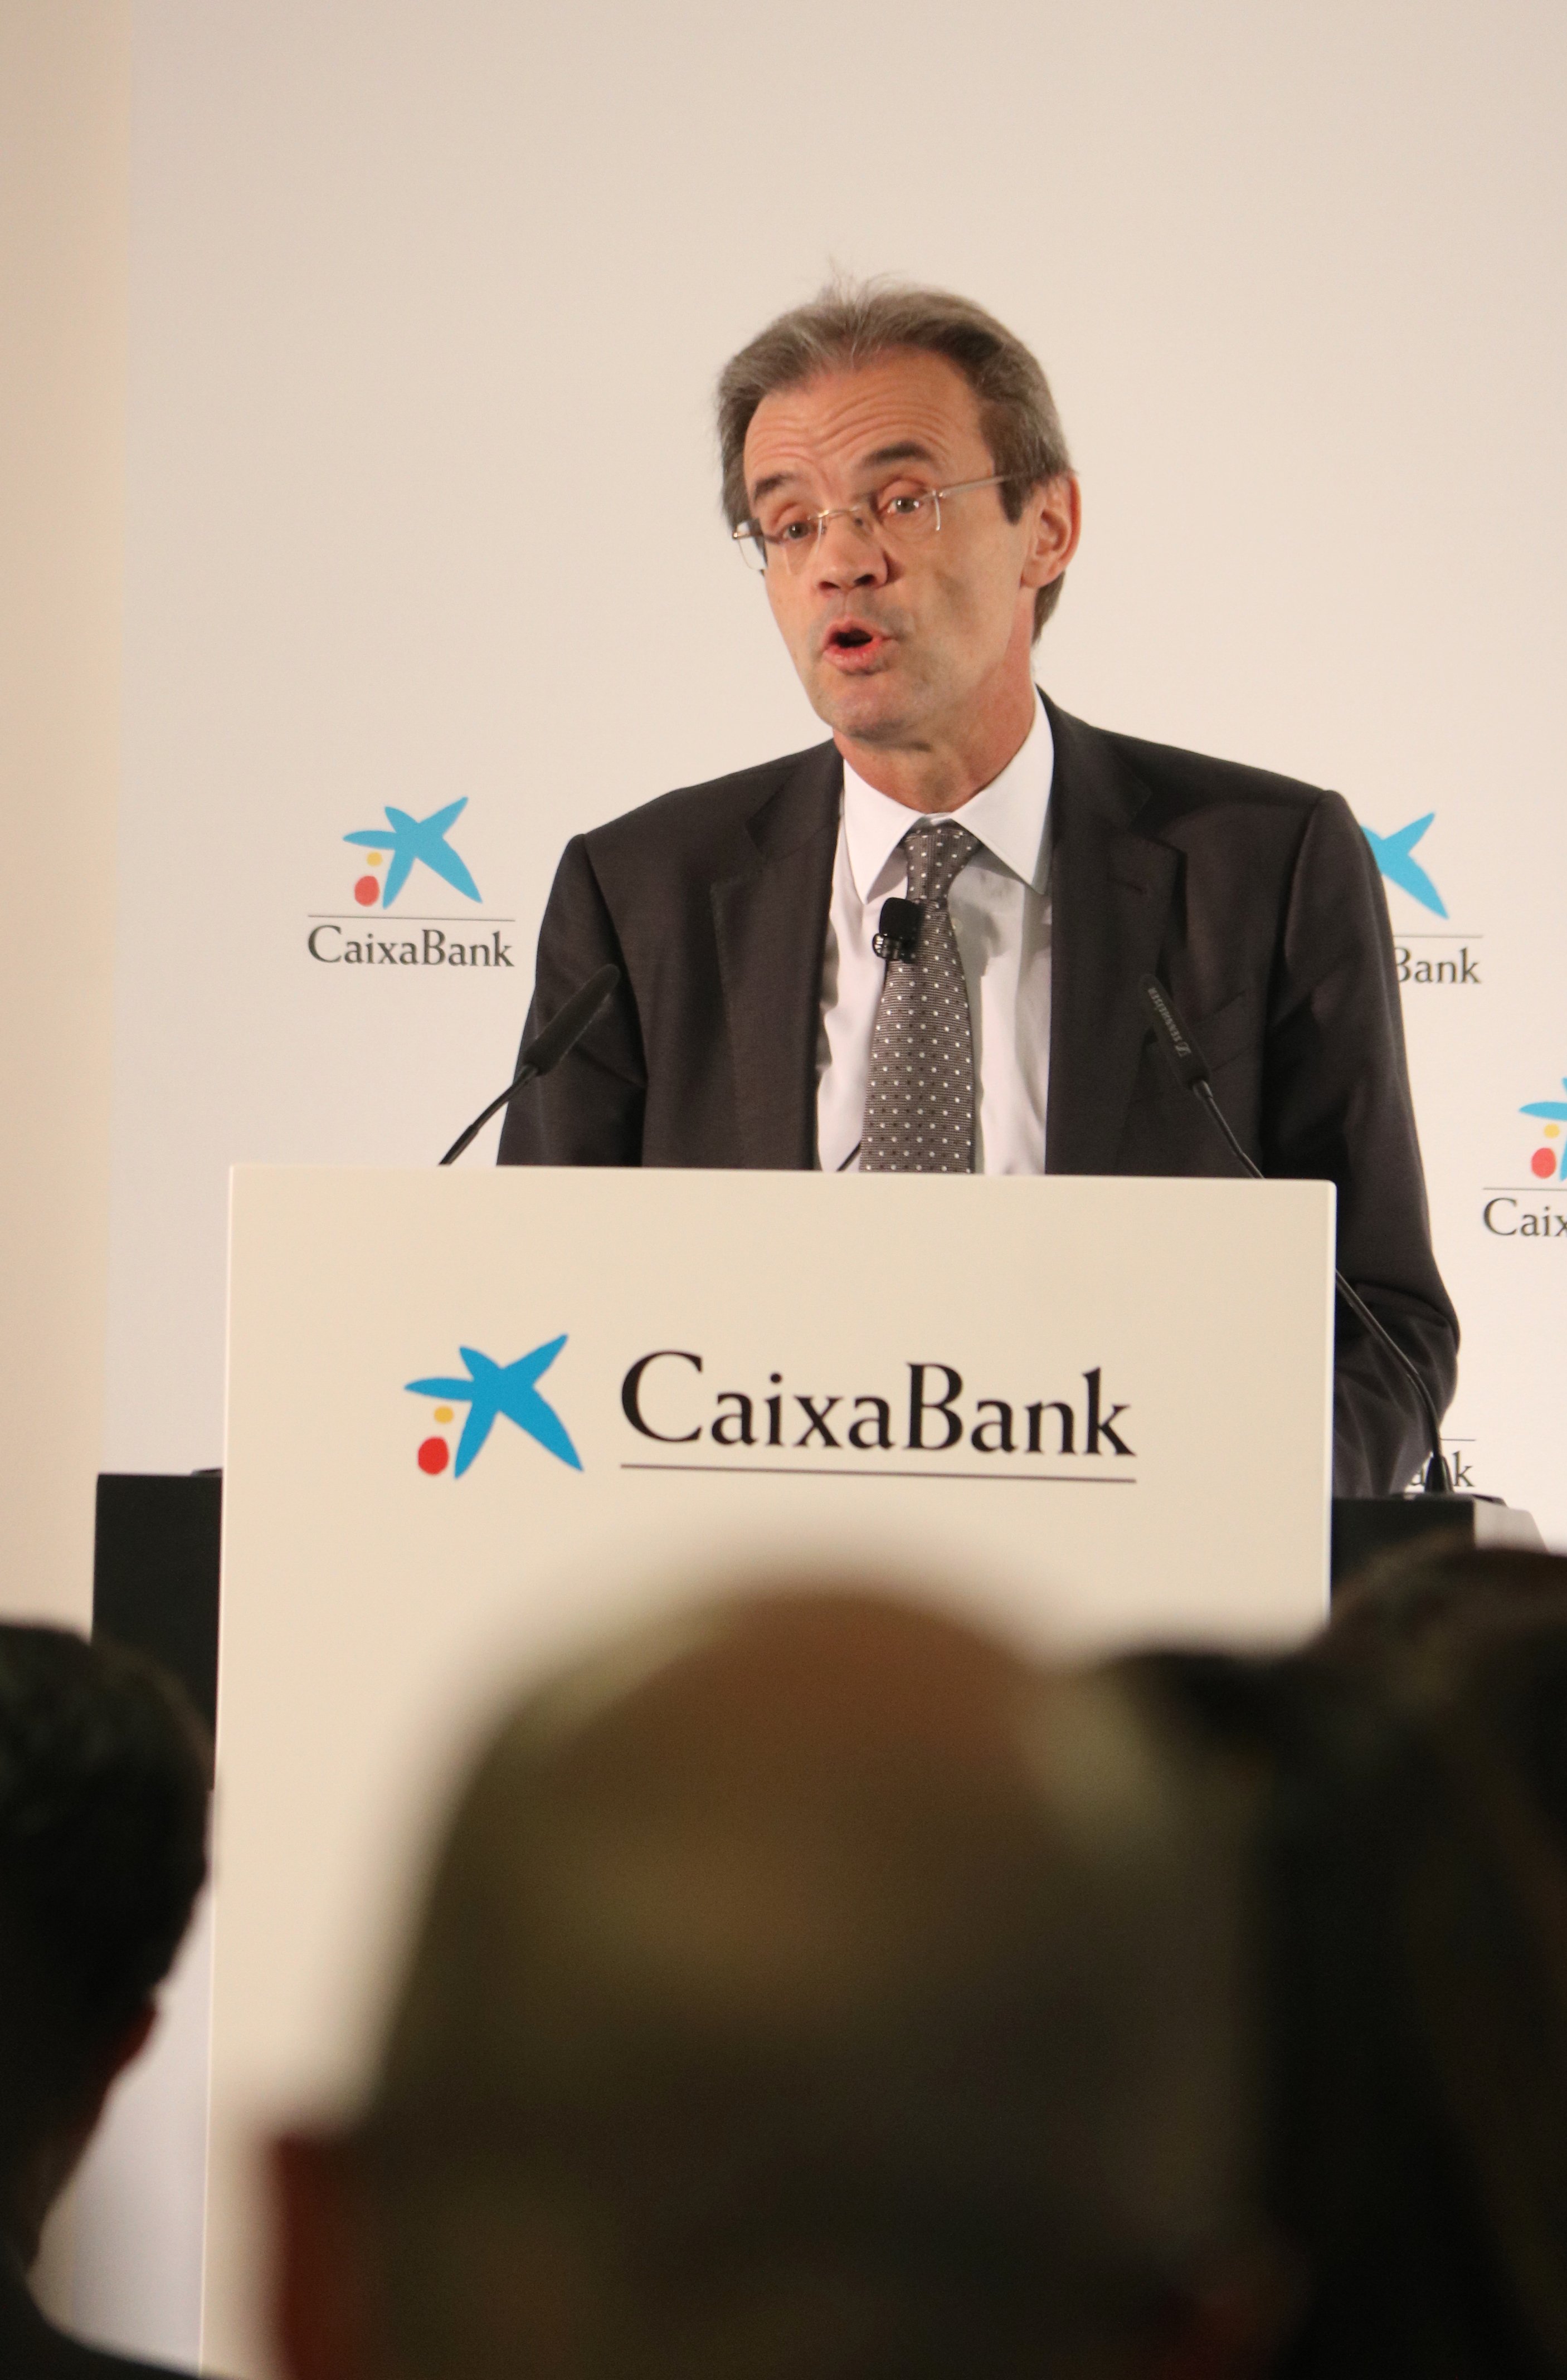 El pla estratègic de CaixaBank preveu una rendibilitat superior al 12% el 2021